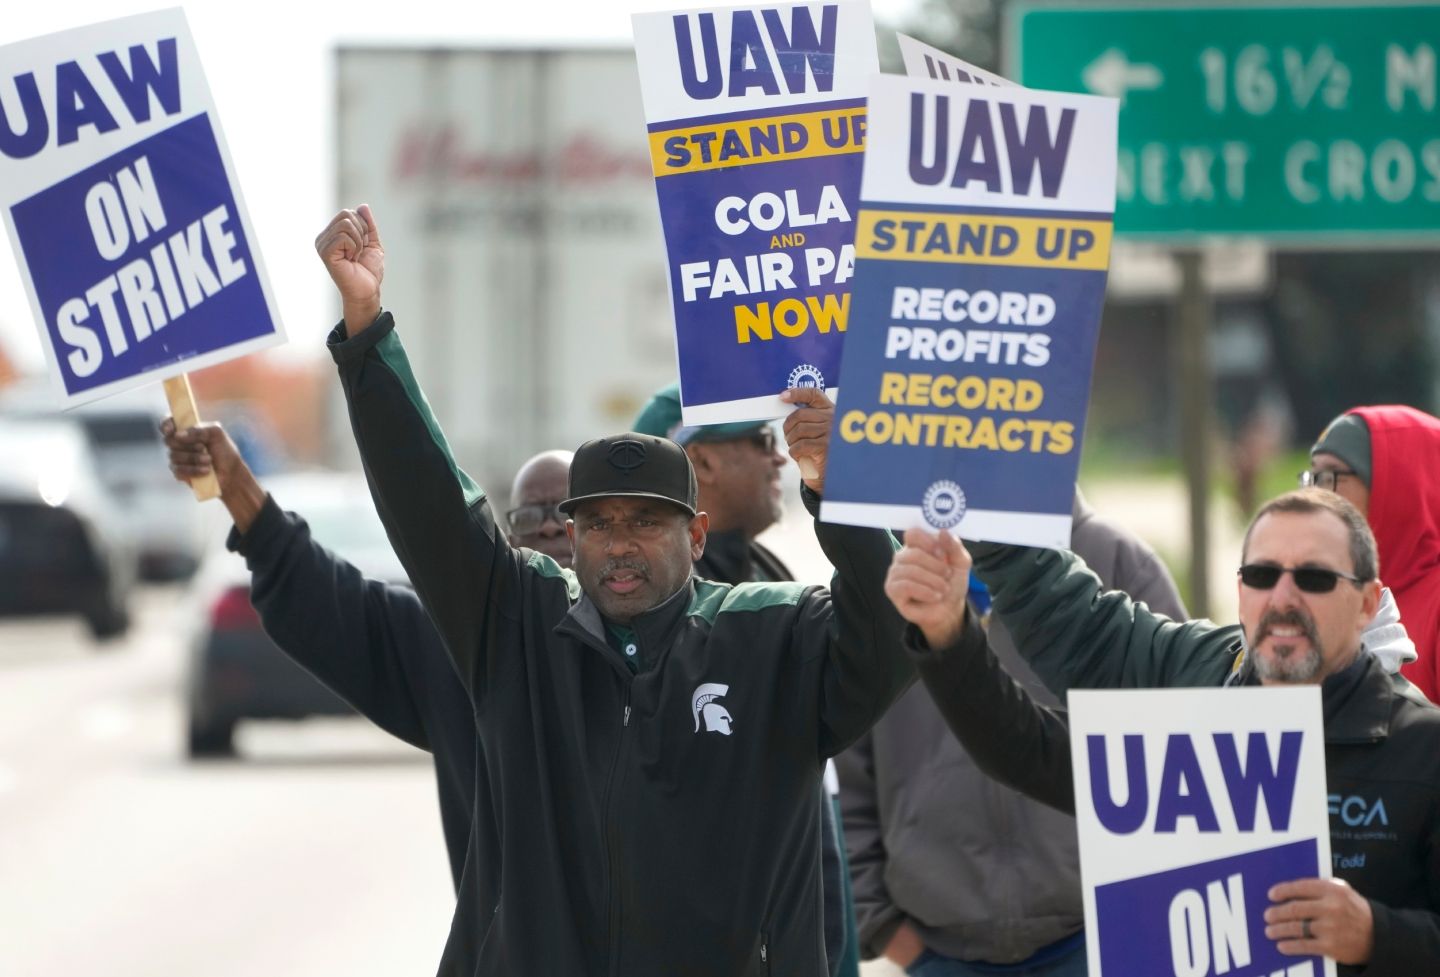 UAW strikers demonstrate